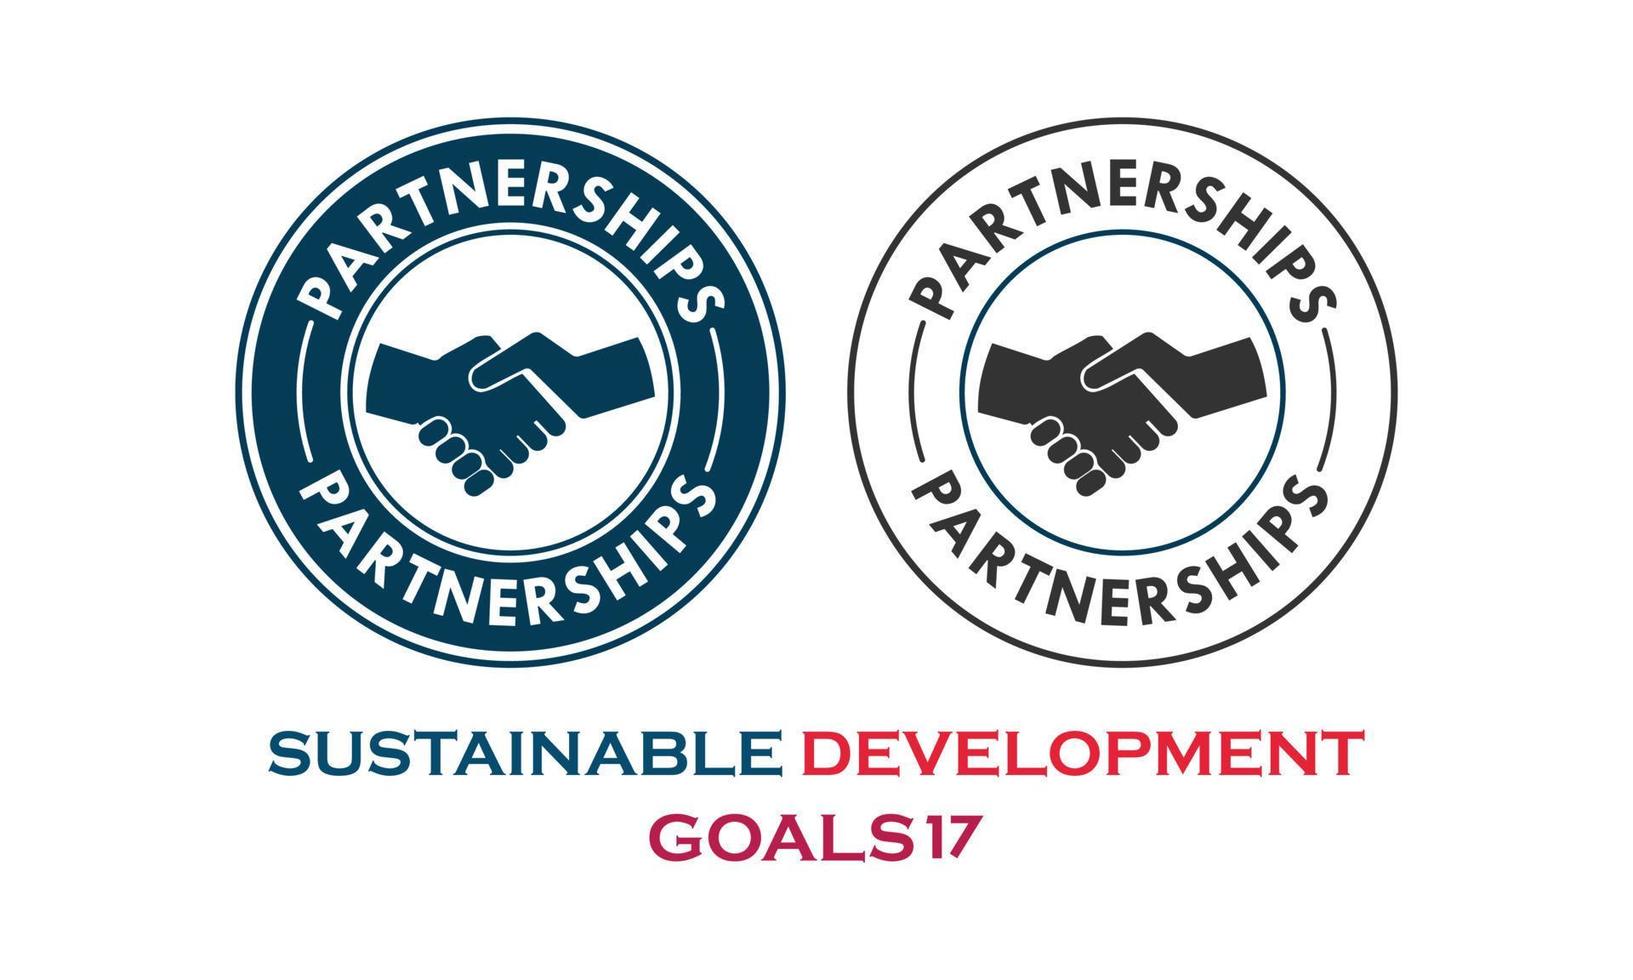 objectifs de développement durable, point sur les partenariats vecteur